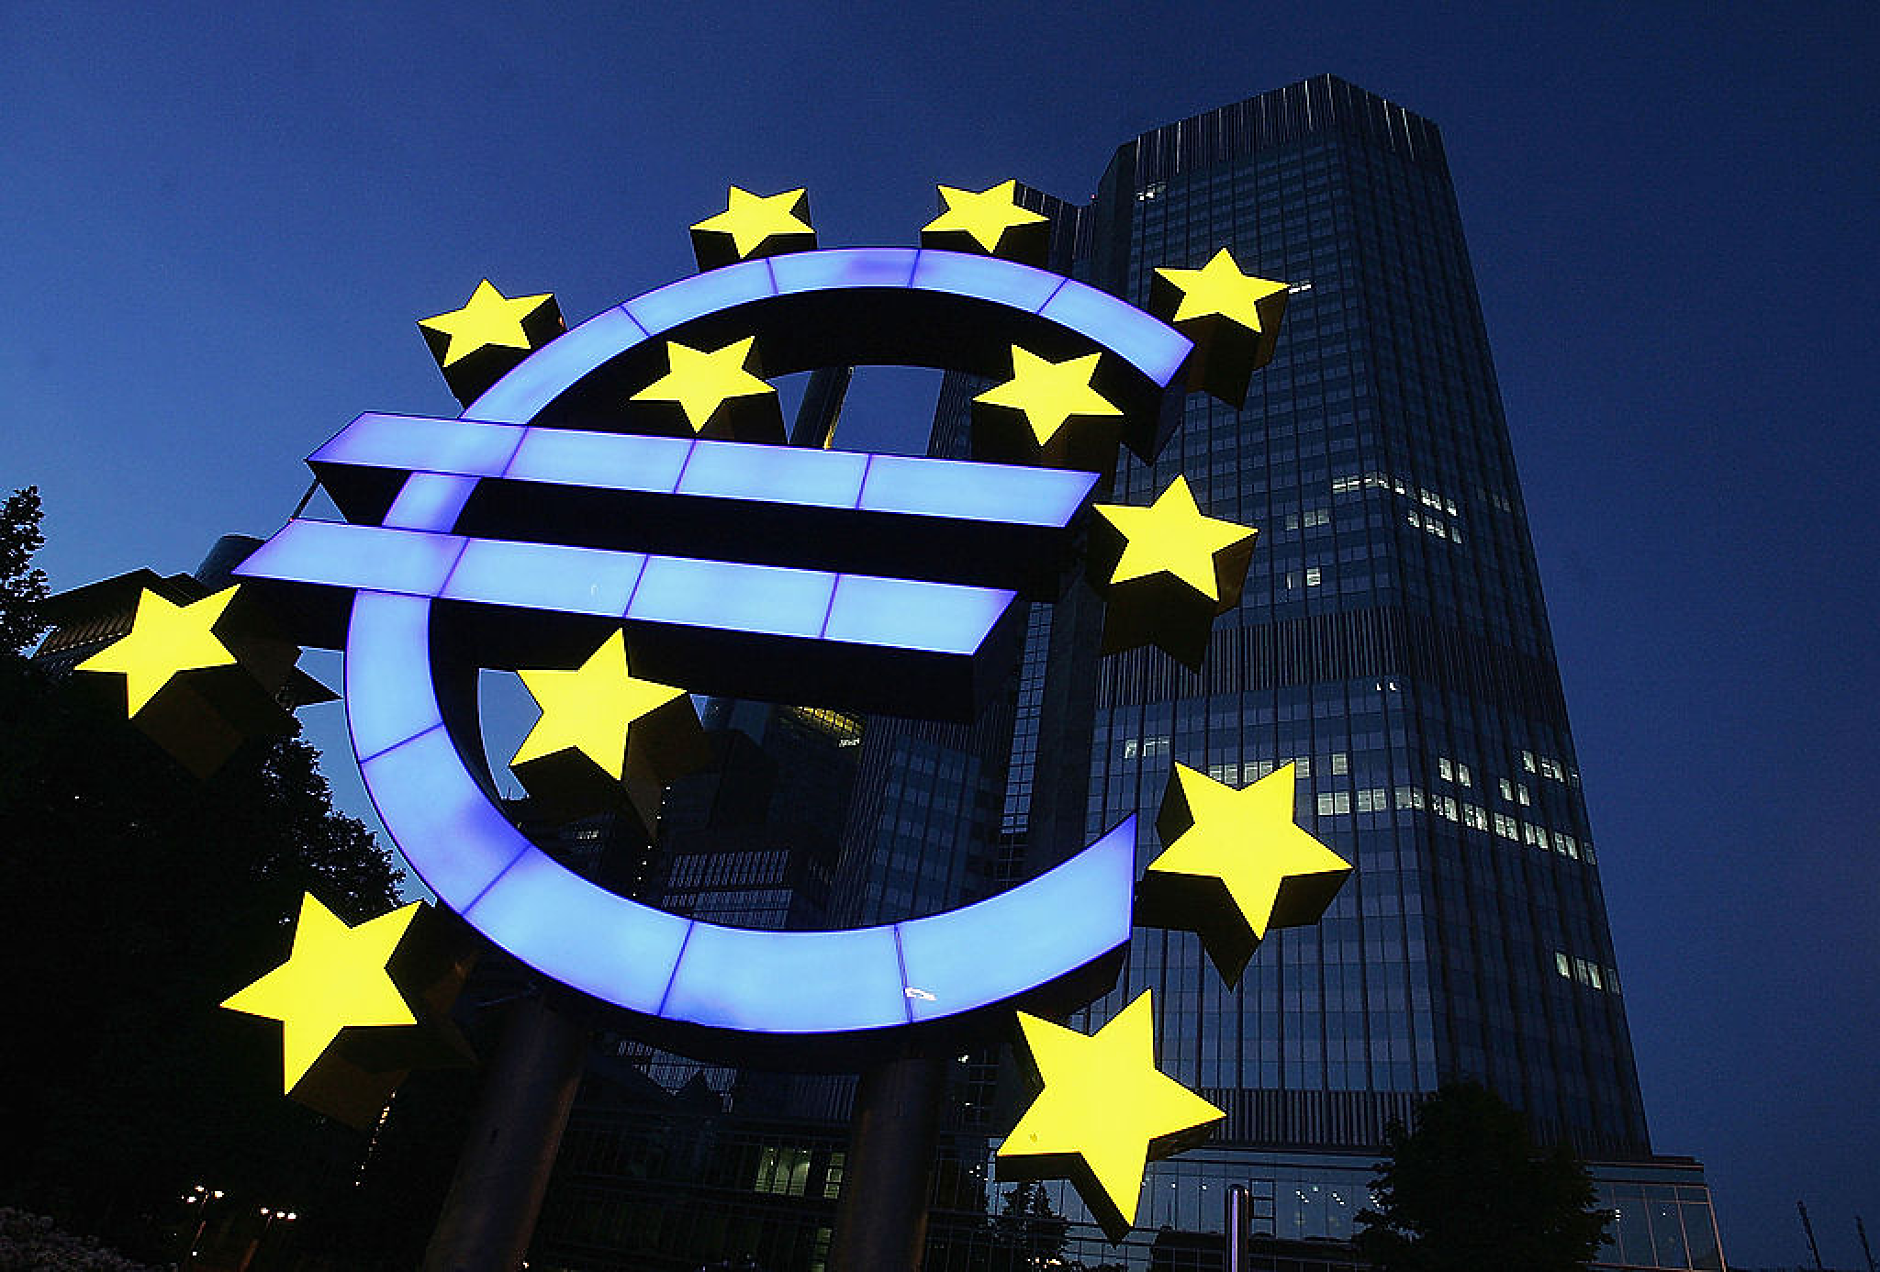 Главният икономист на ЕЦБ предупреди пазарите да не очакват скоро понижения на лихвите